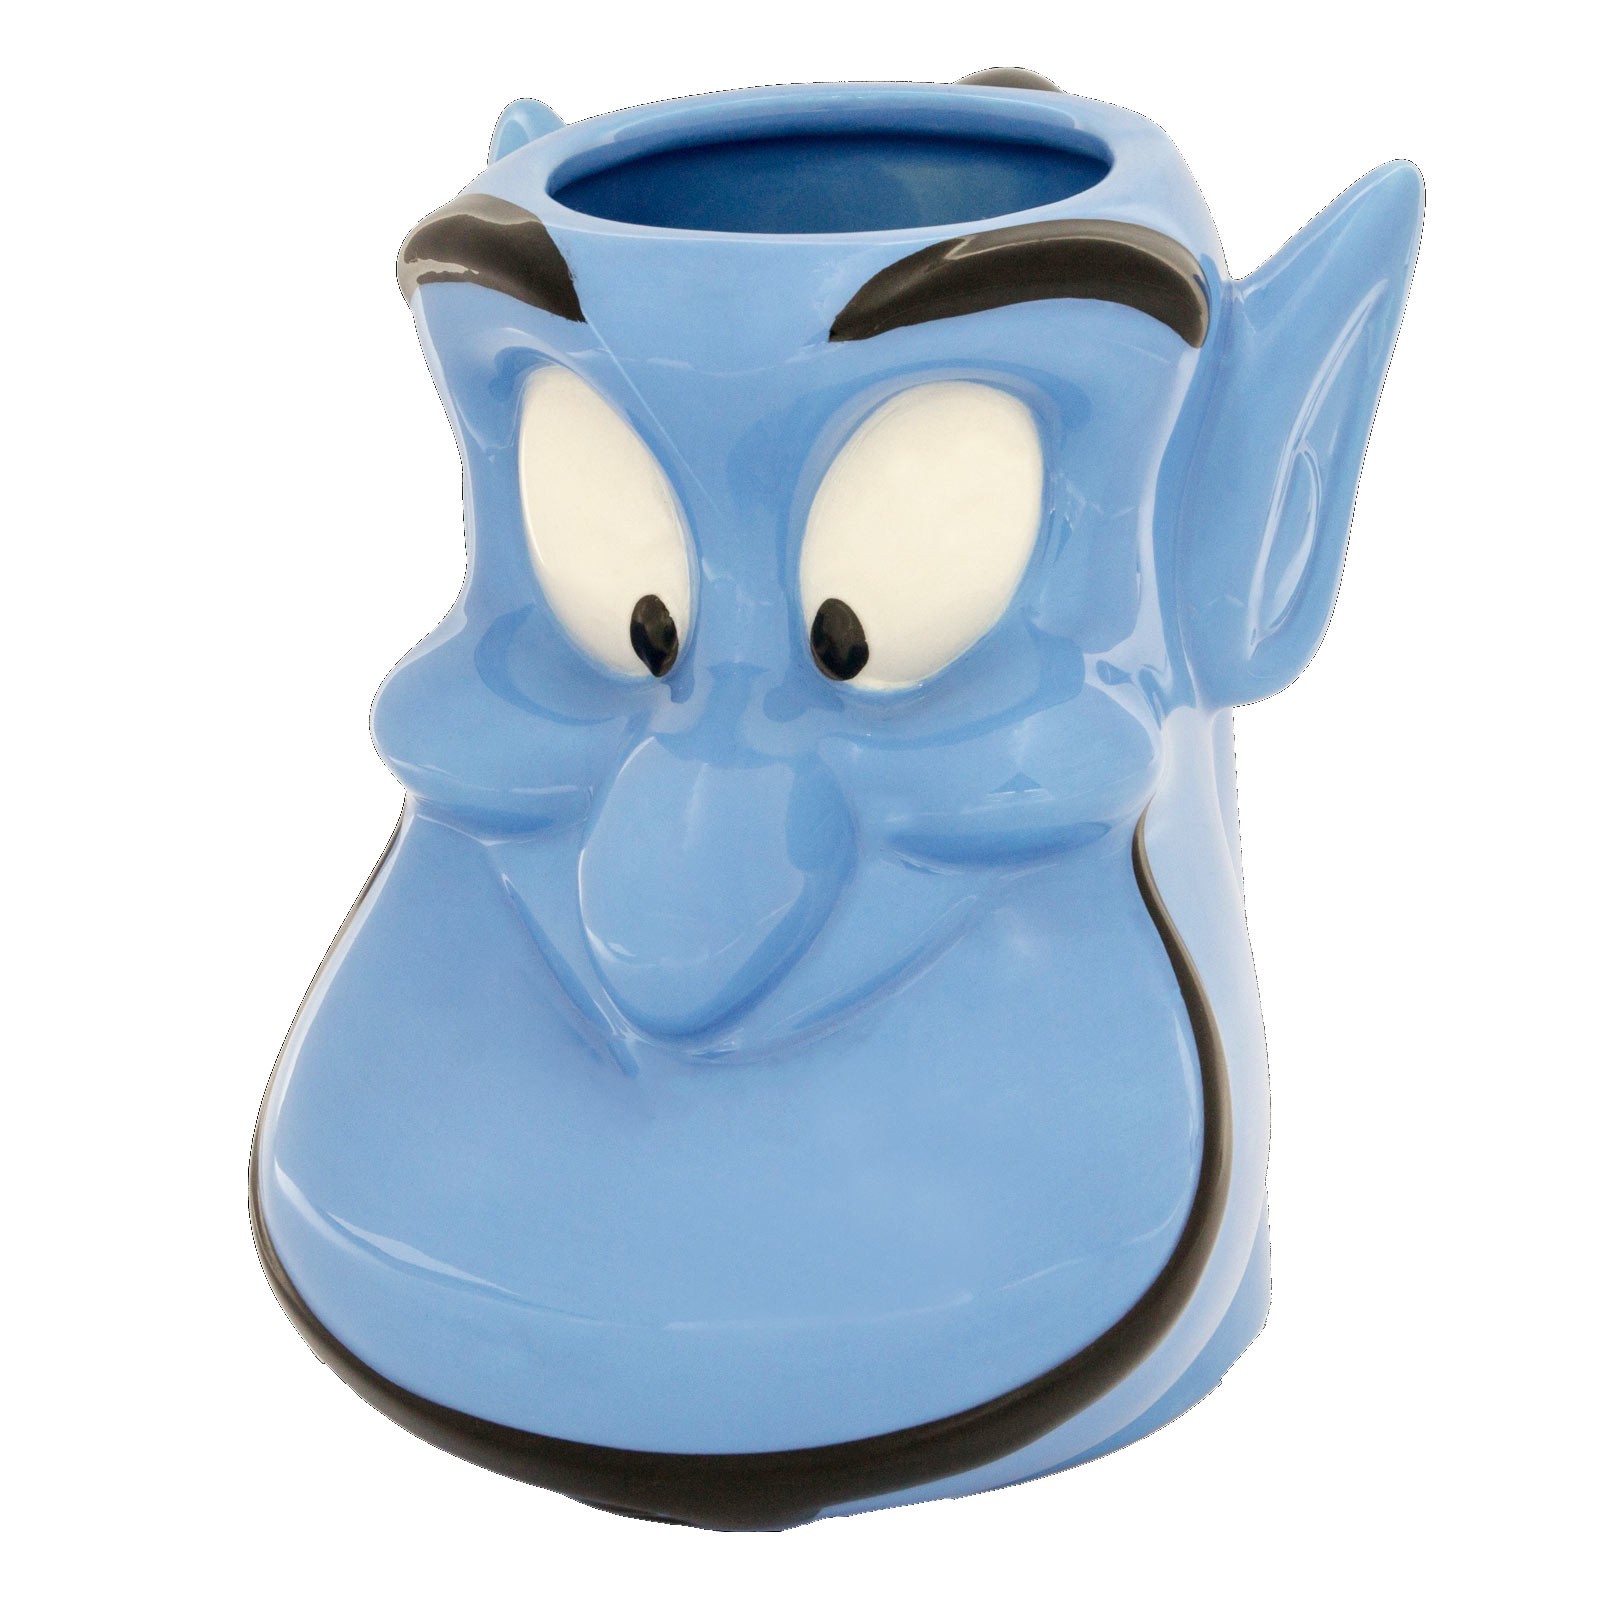 Aladdin Genie Face Mug